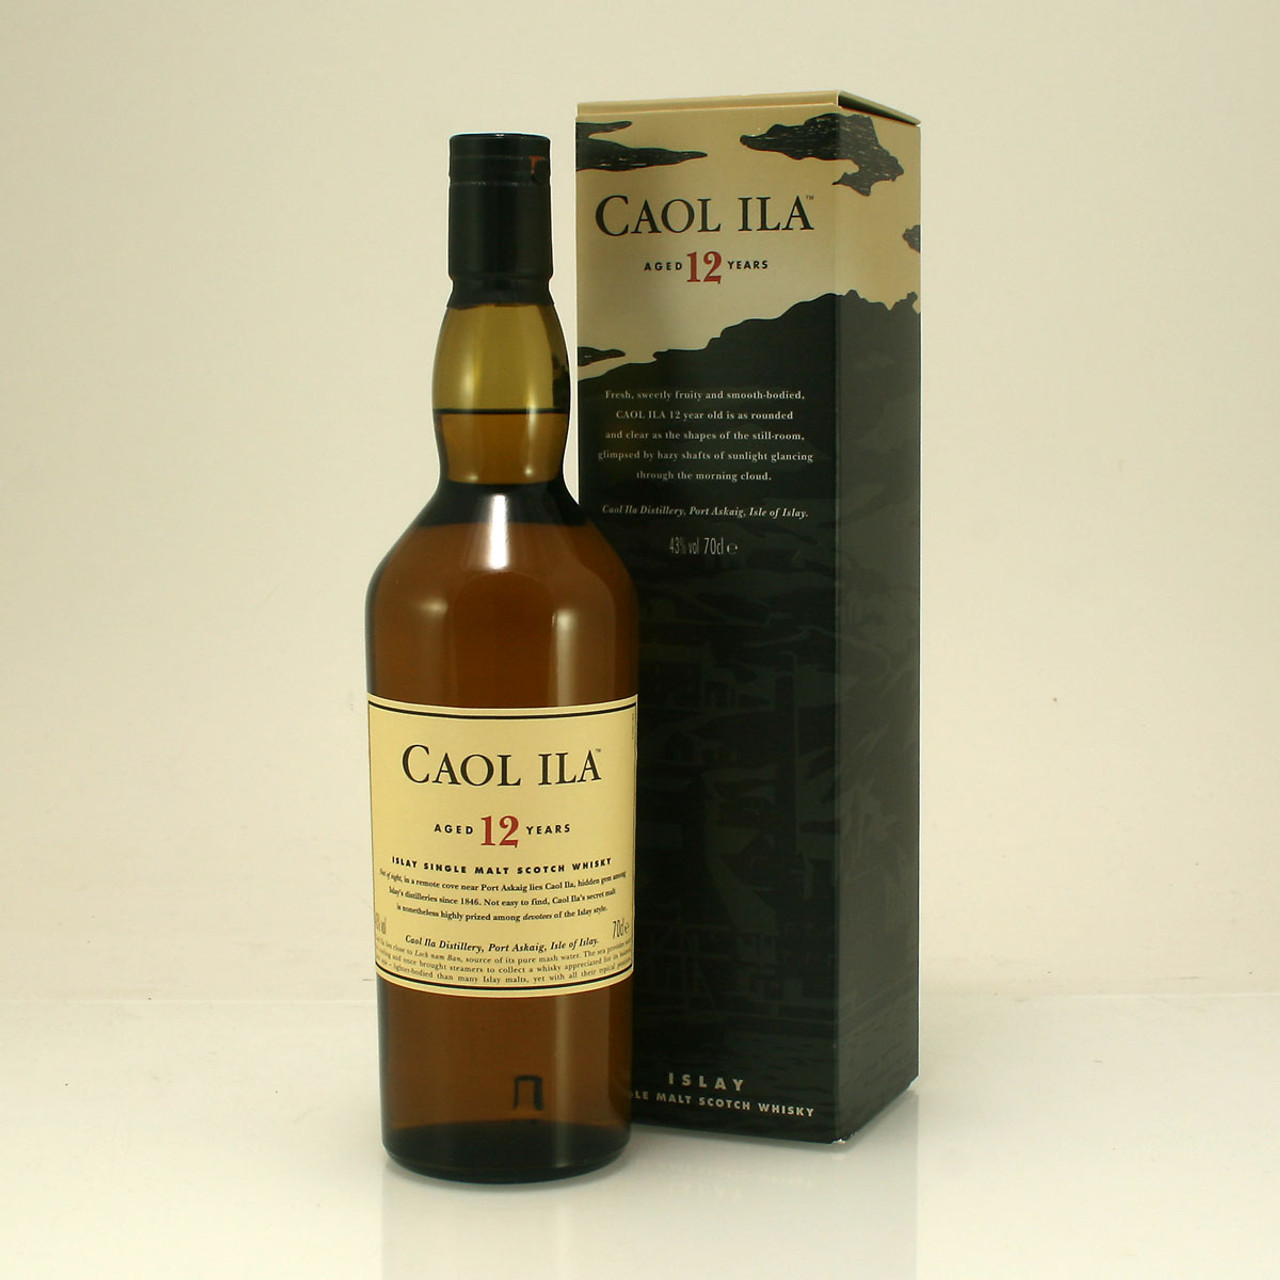 CAOL ILA 12 ANS - whisky d'islay 43%